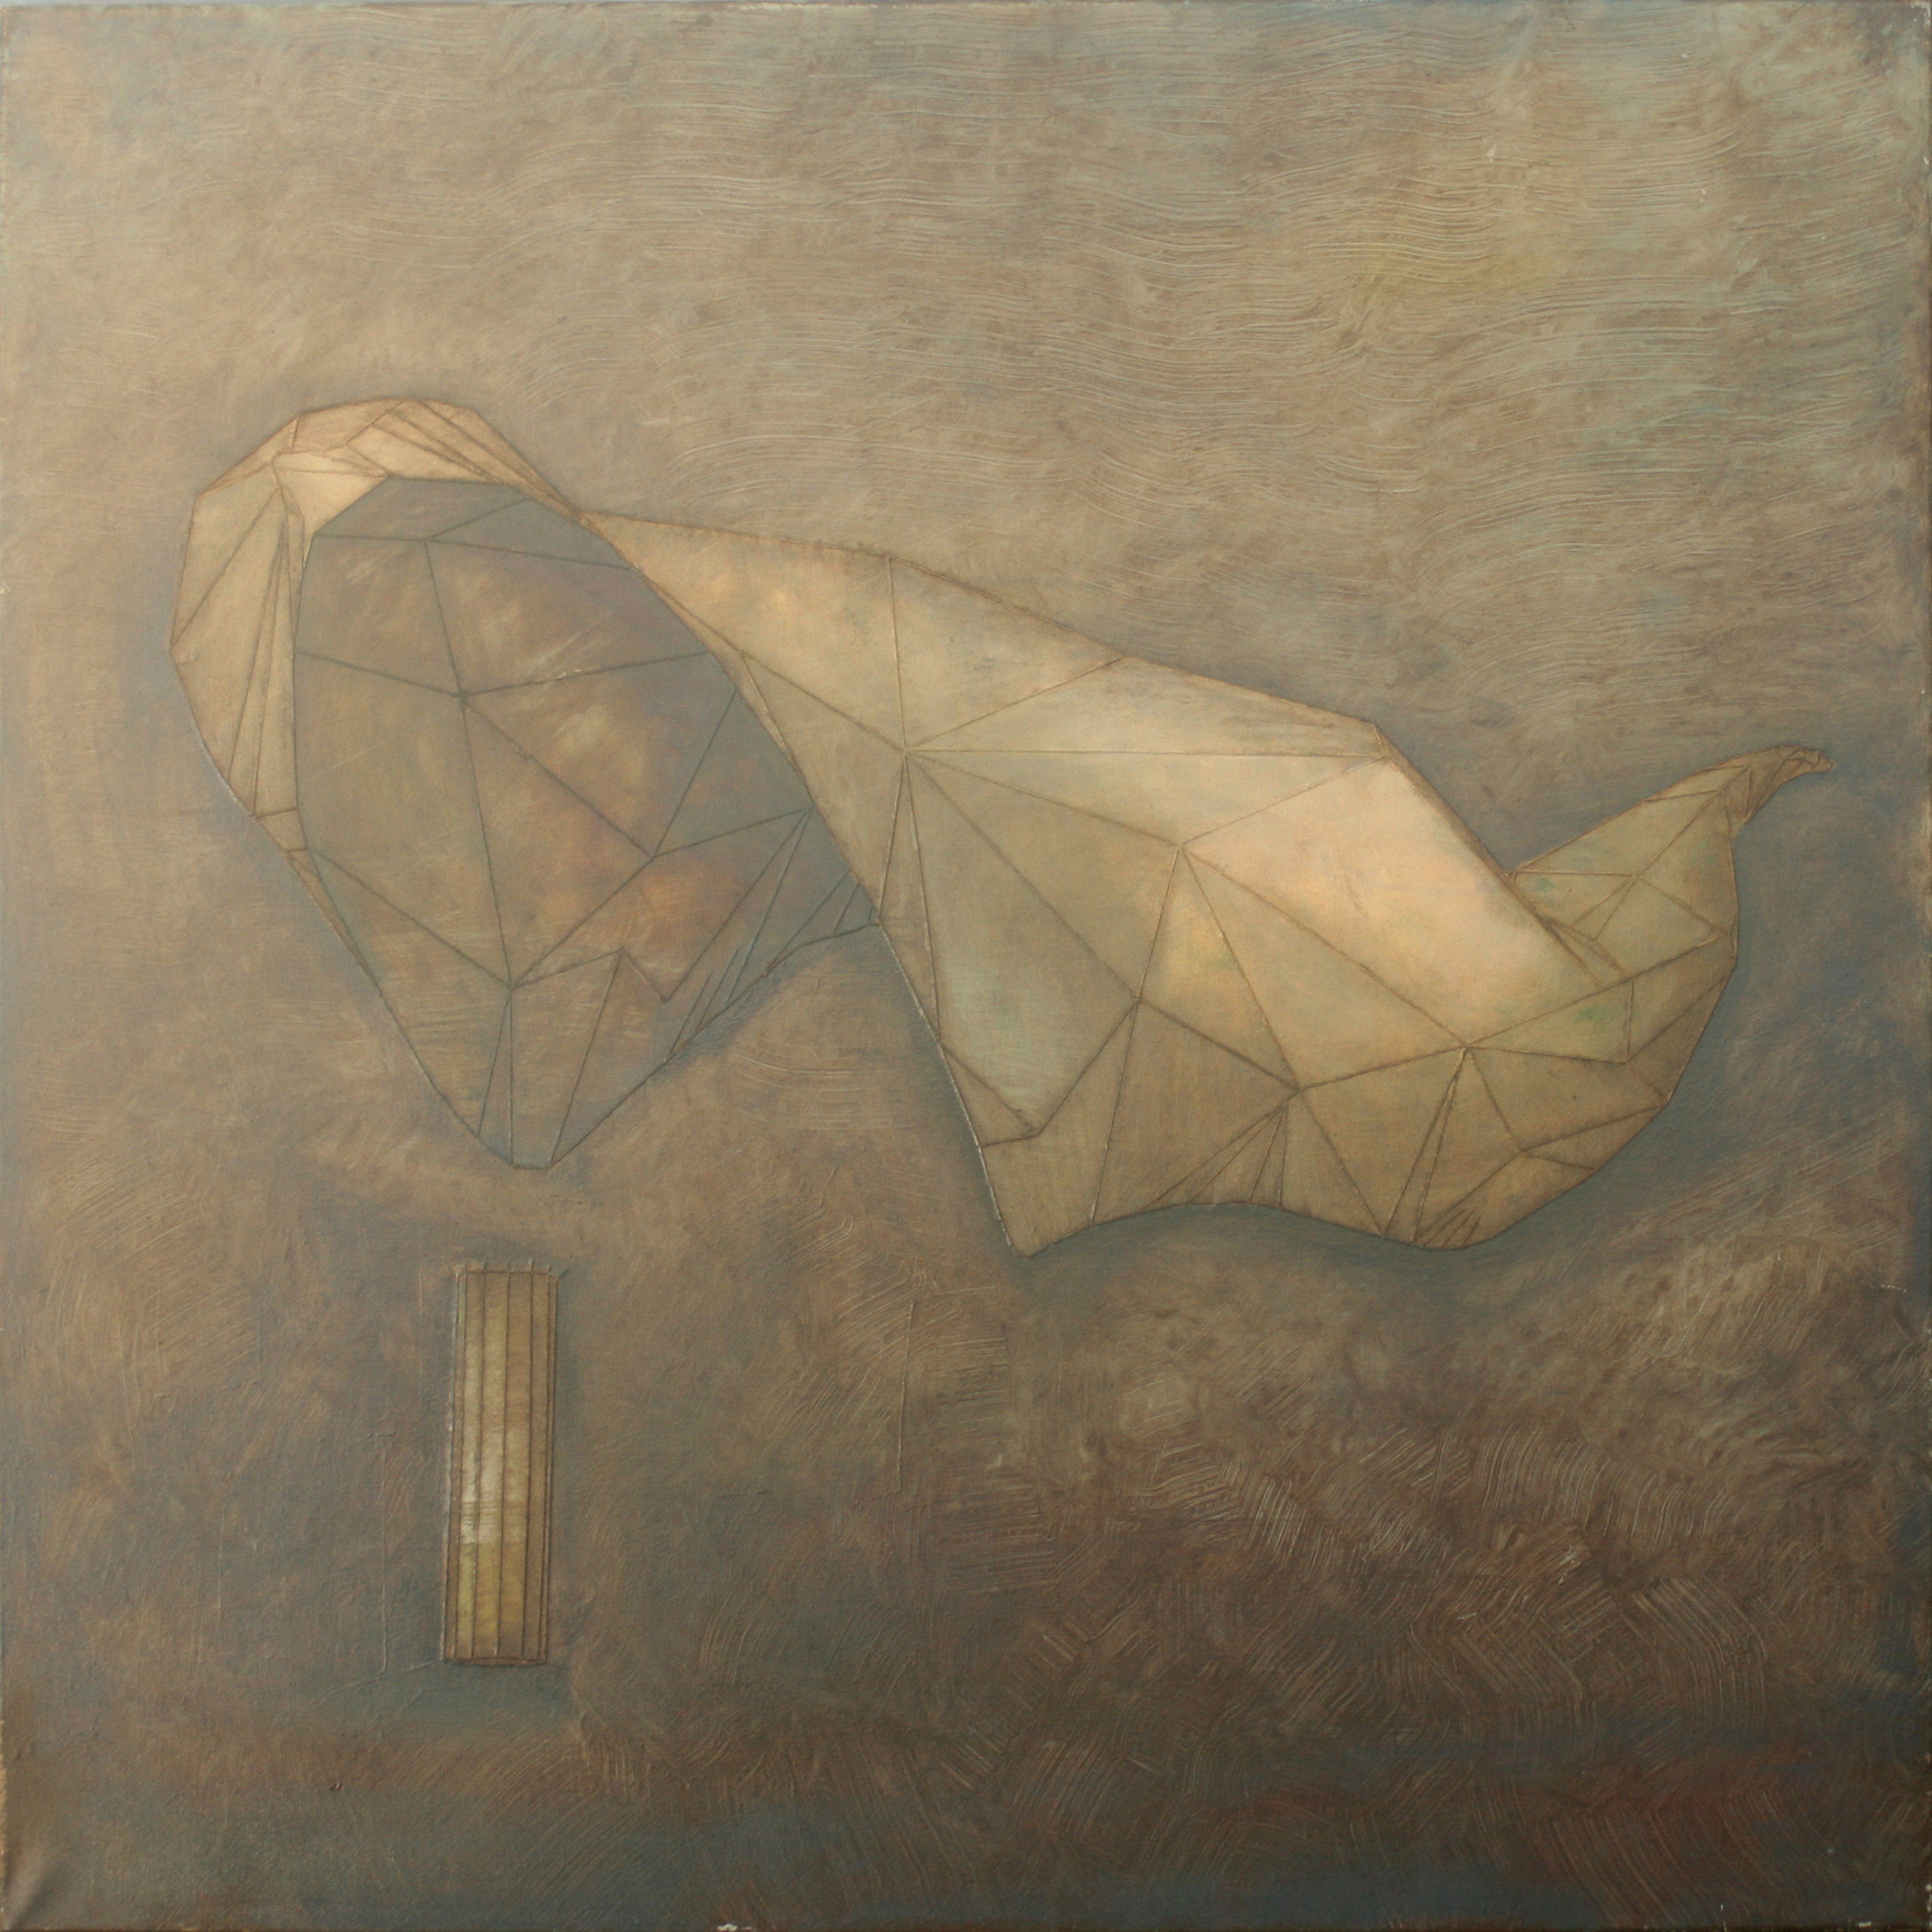 tarp, cloth in wind K_Van painting